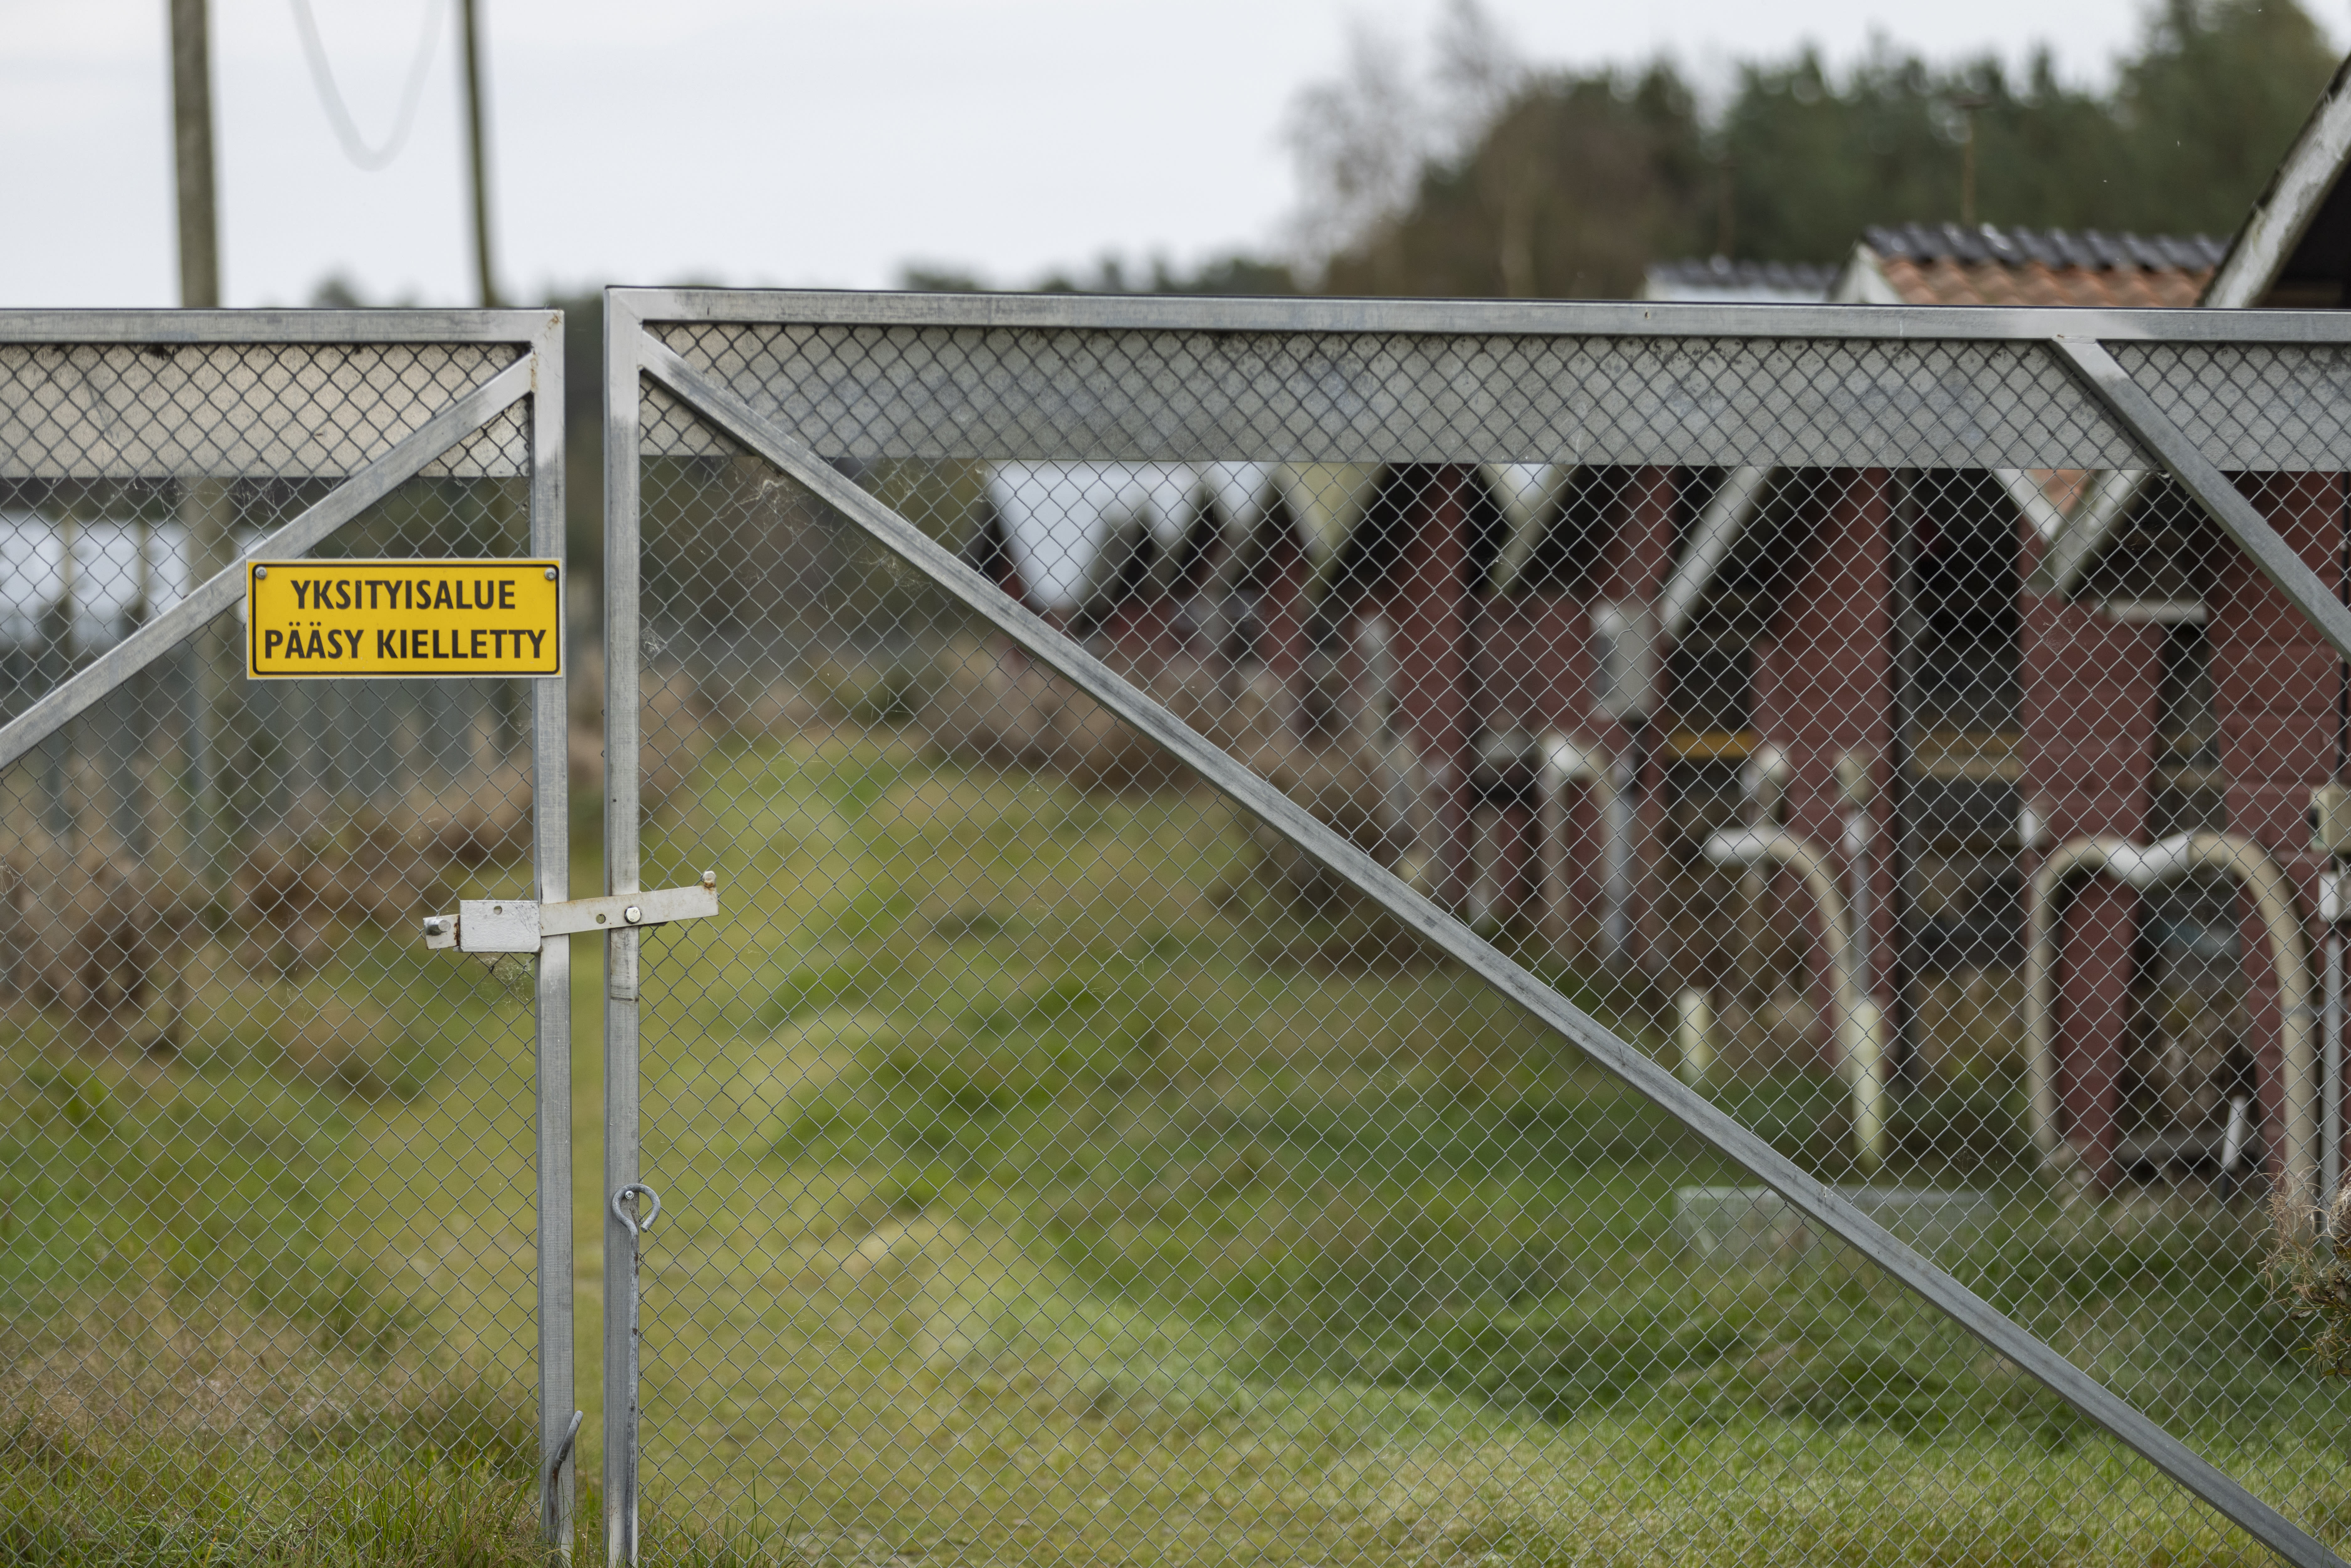 La confirmación de la gripe aviar exige el sacrificio de otras 10 granjas peleteras